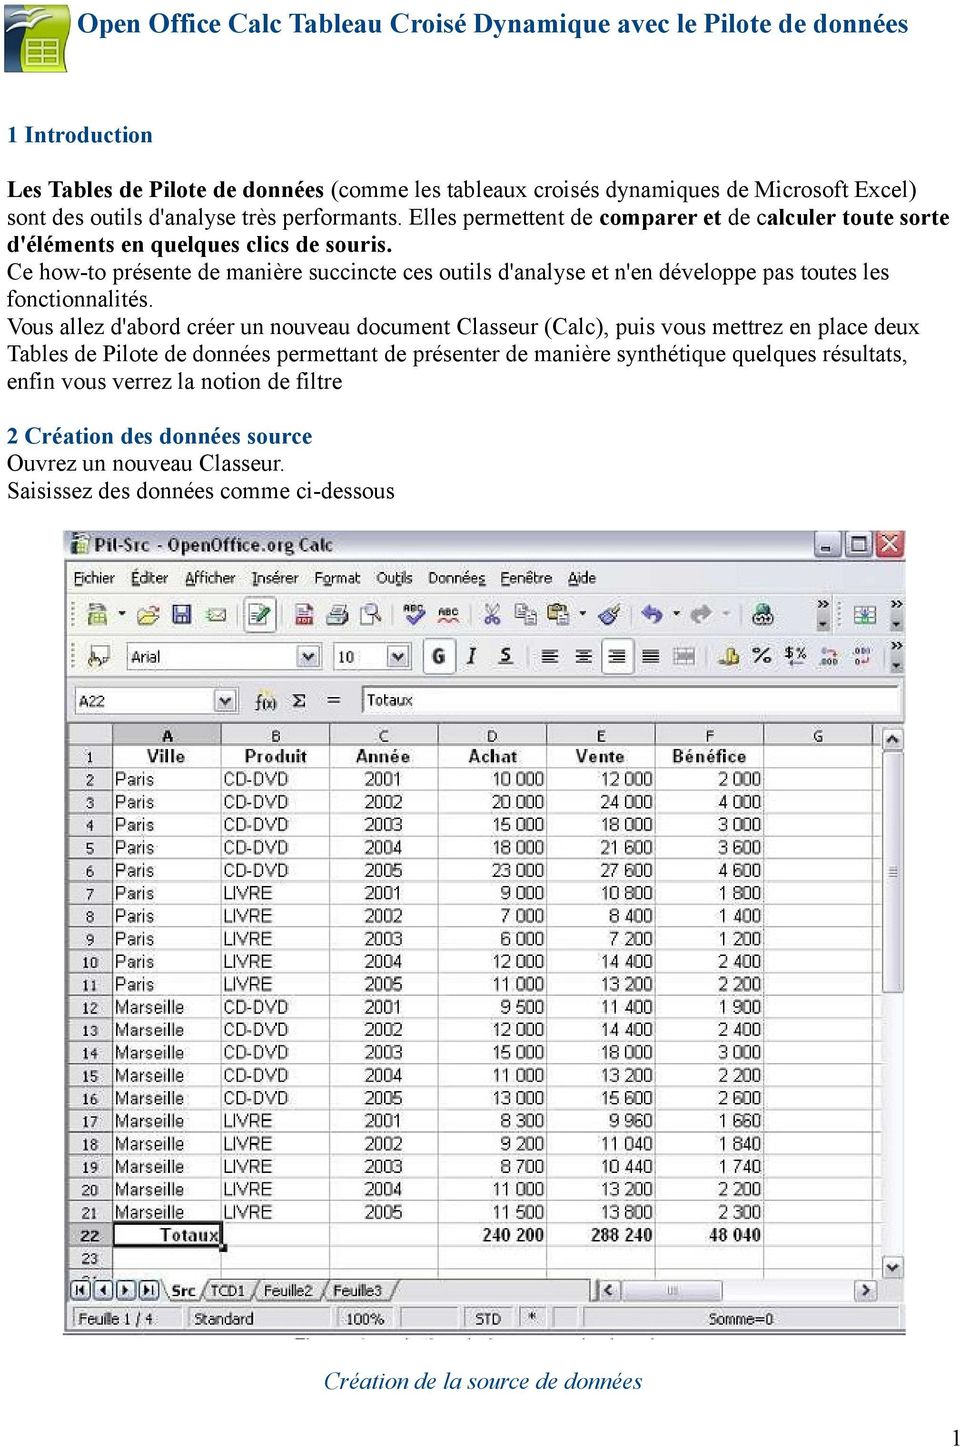 Open Office Calc Tableau Croise Dynamique Avec Le Pilote De Donnees Pdf Free Download